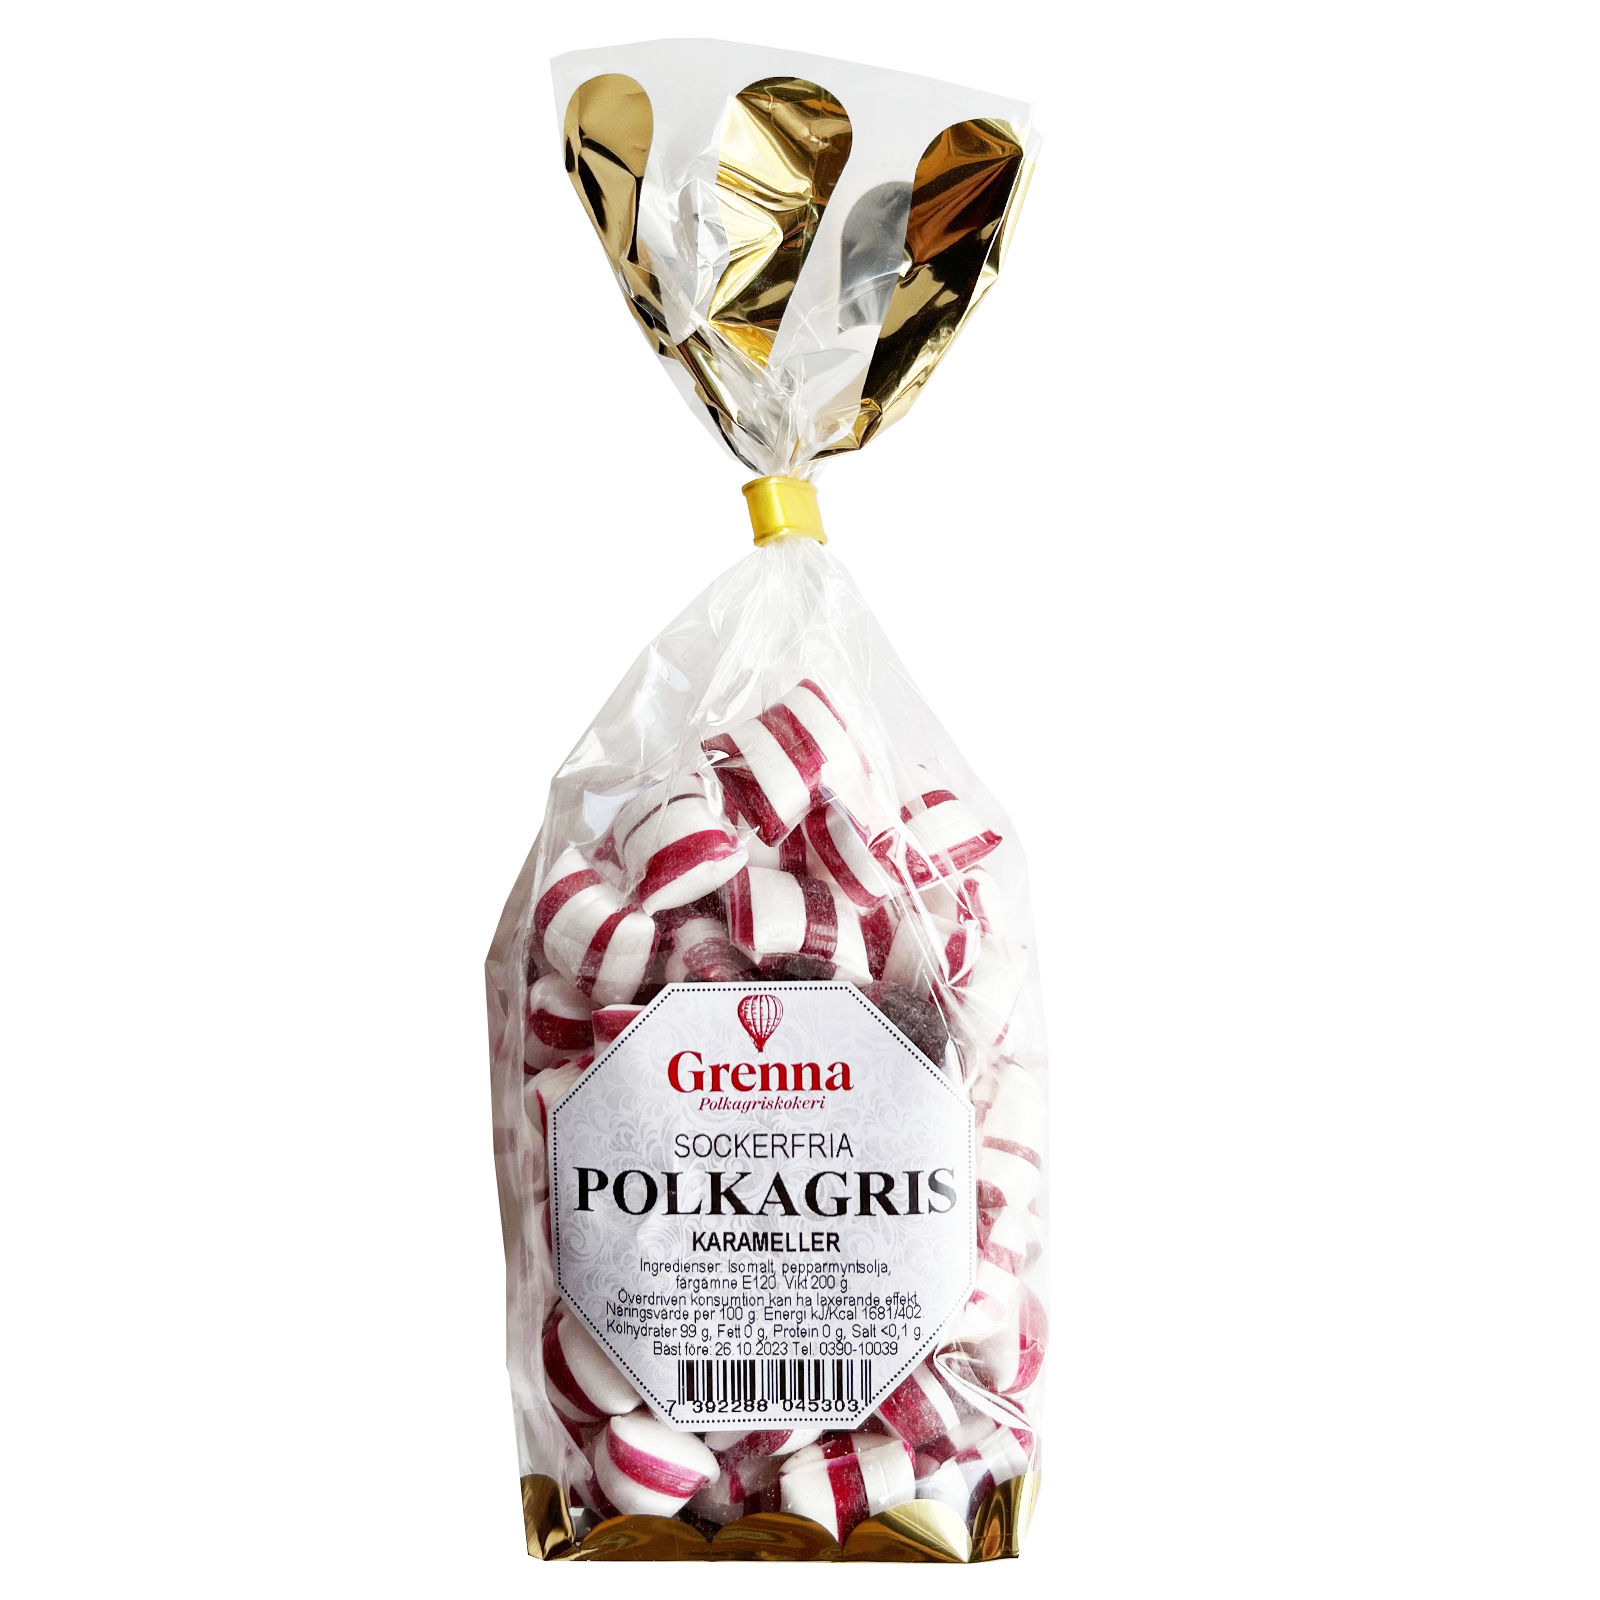 Grenna Polkagriskokeri - Sockerfria Polkakarameller, 200 g